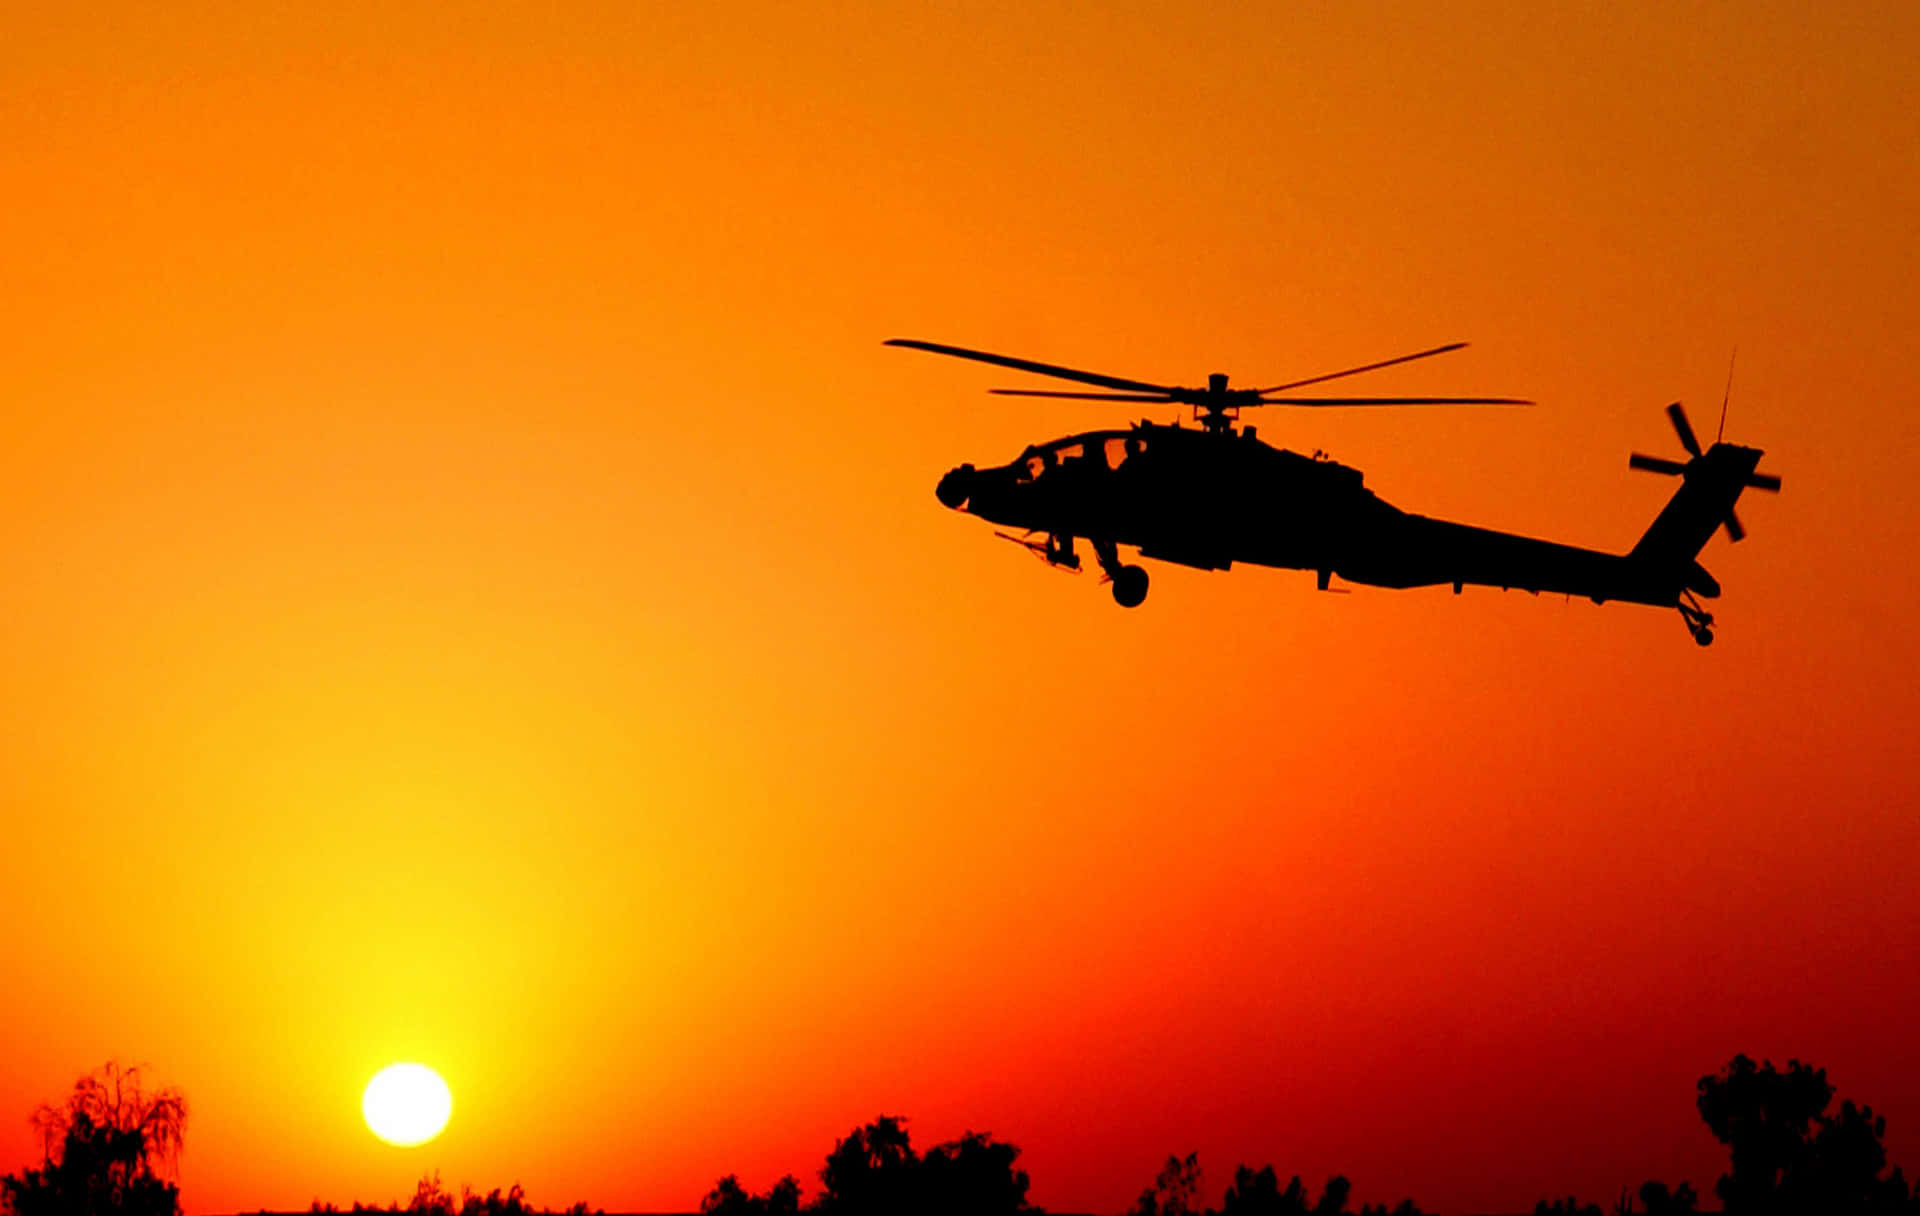 Enhelikopter Lyfter I En Solnedgångshimmel.